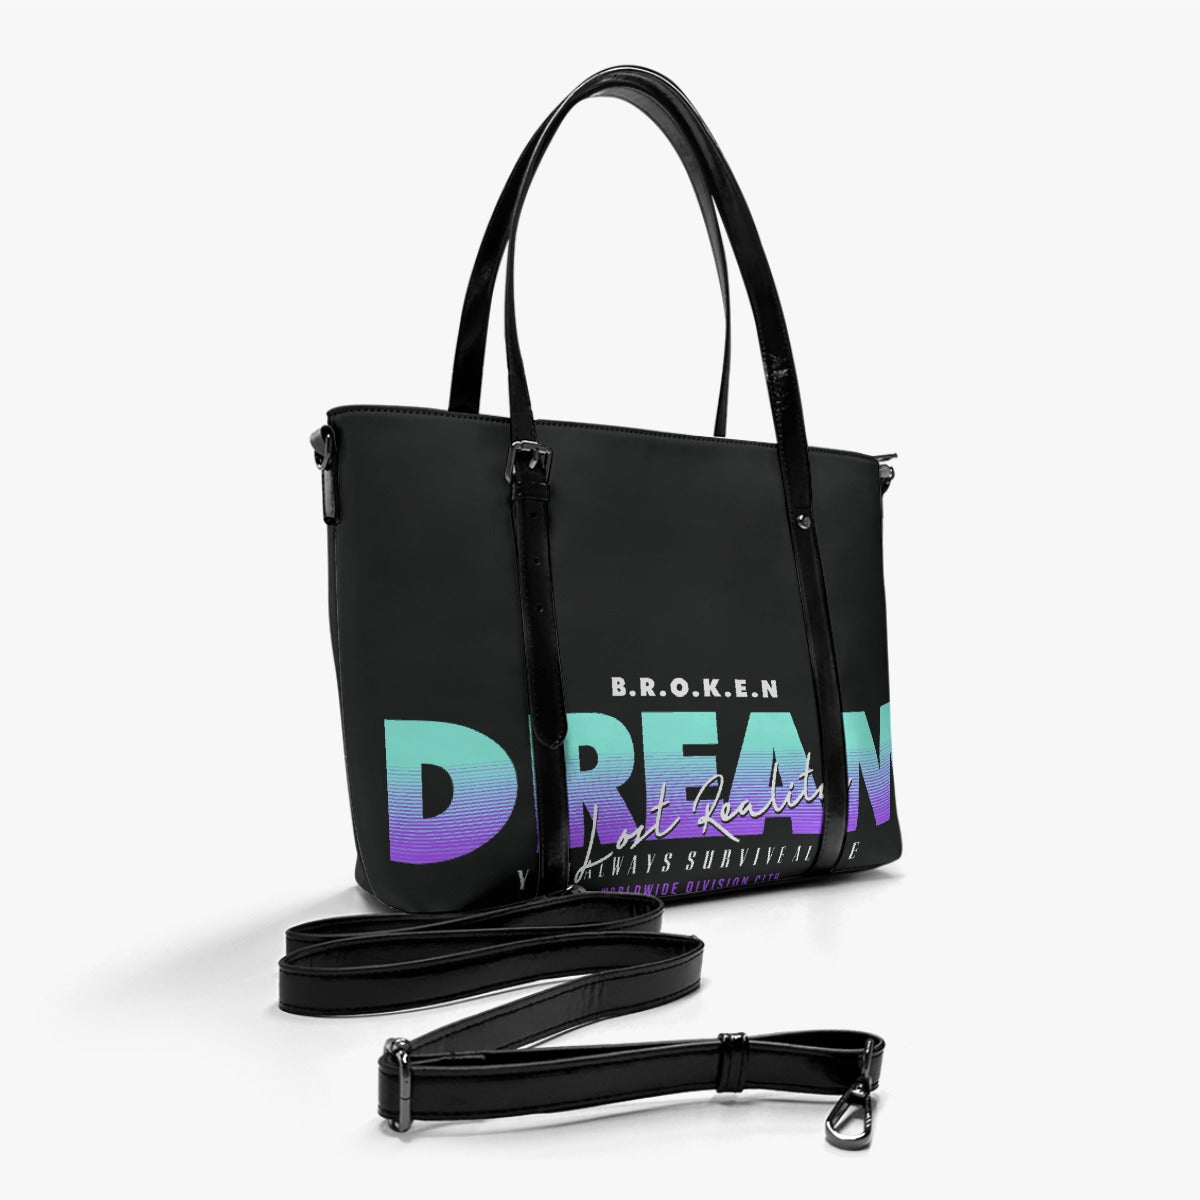 Broken Dreams Women's Tote Bag With Adjustable Handle